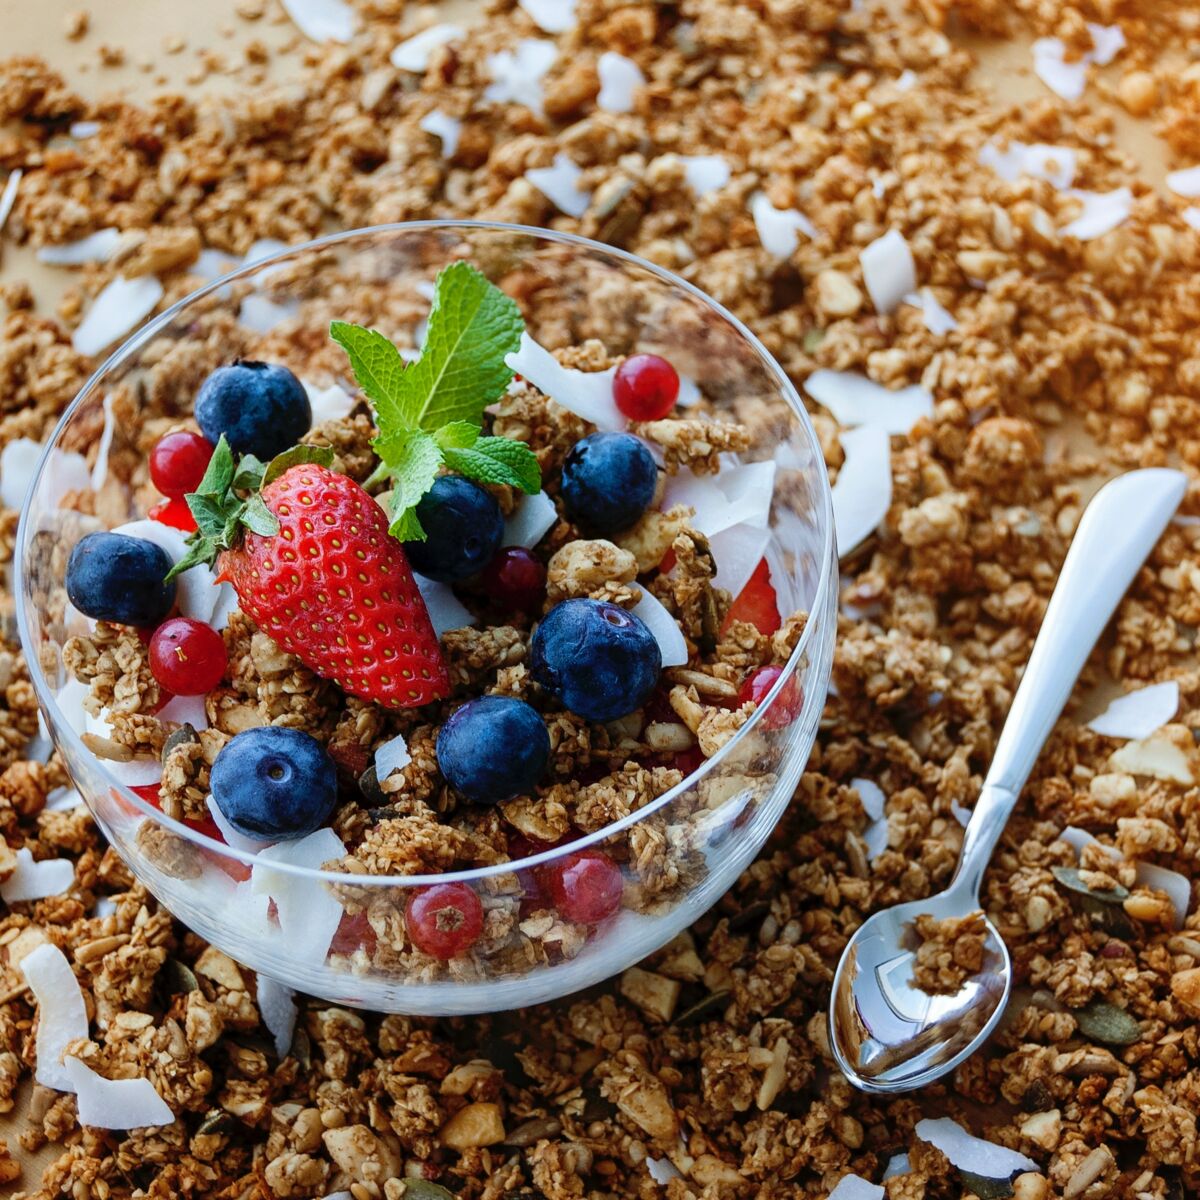 Petit-déjeuner : quelles céréales choisir quand on veut perdre du poids ? :  Femme Actuelle Le MAG